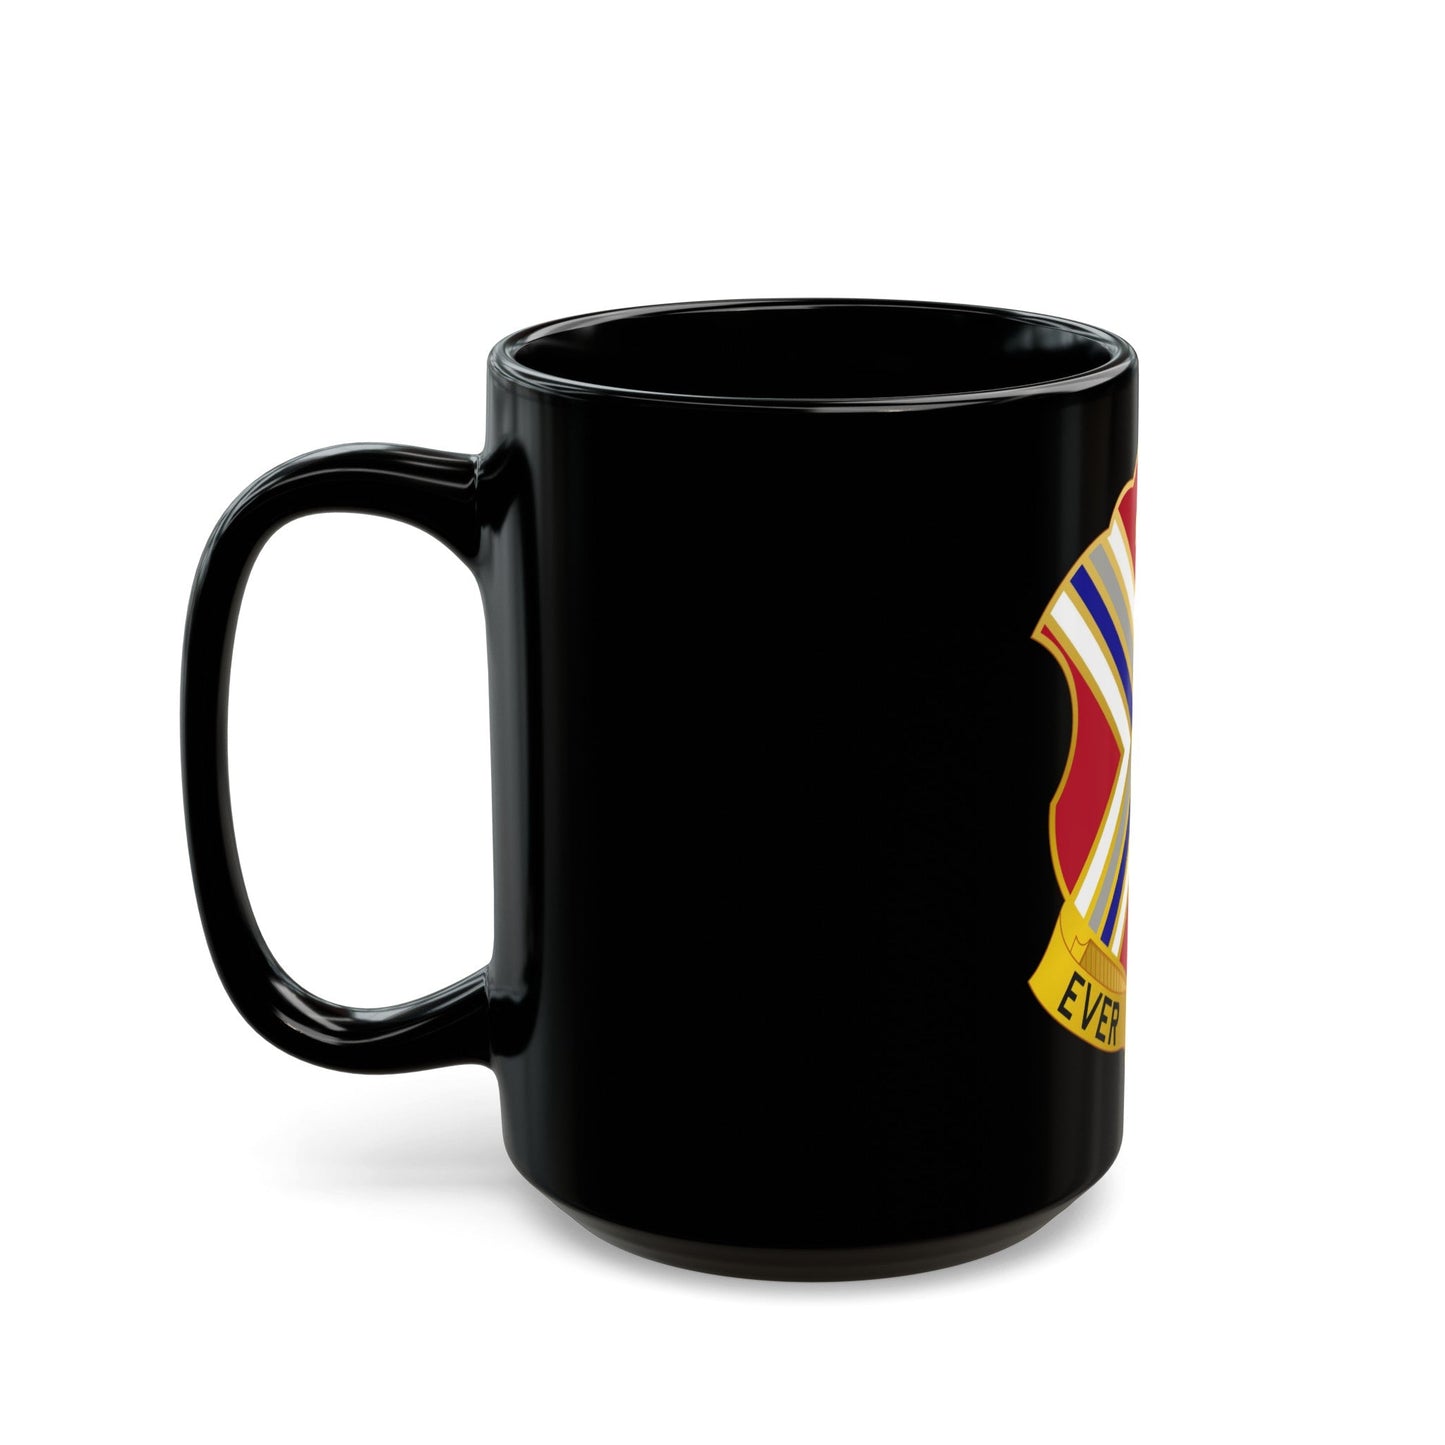 116th Infantry Regiment (U.S. Army) Black Coffee Mug